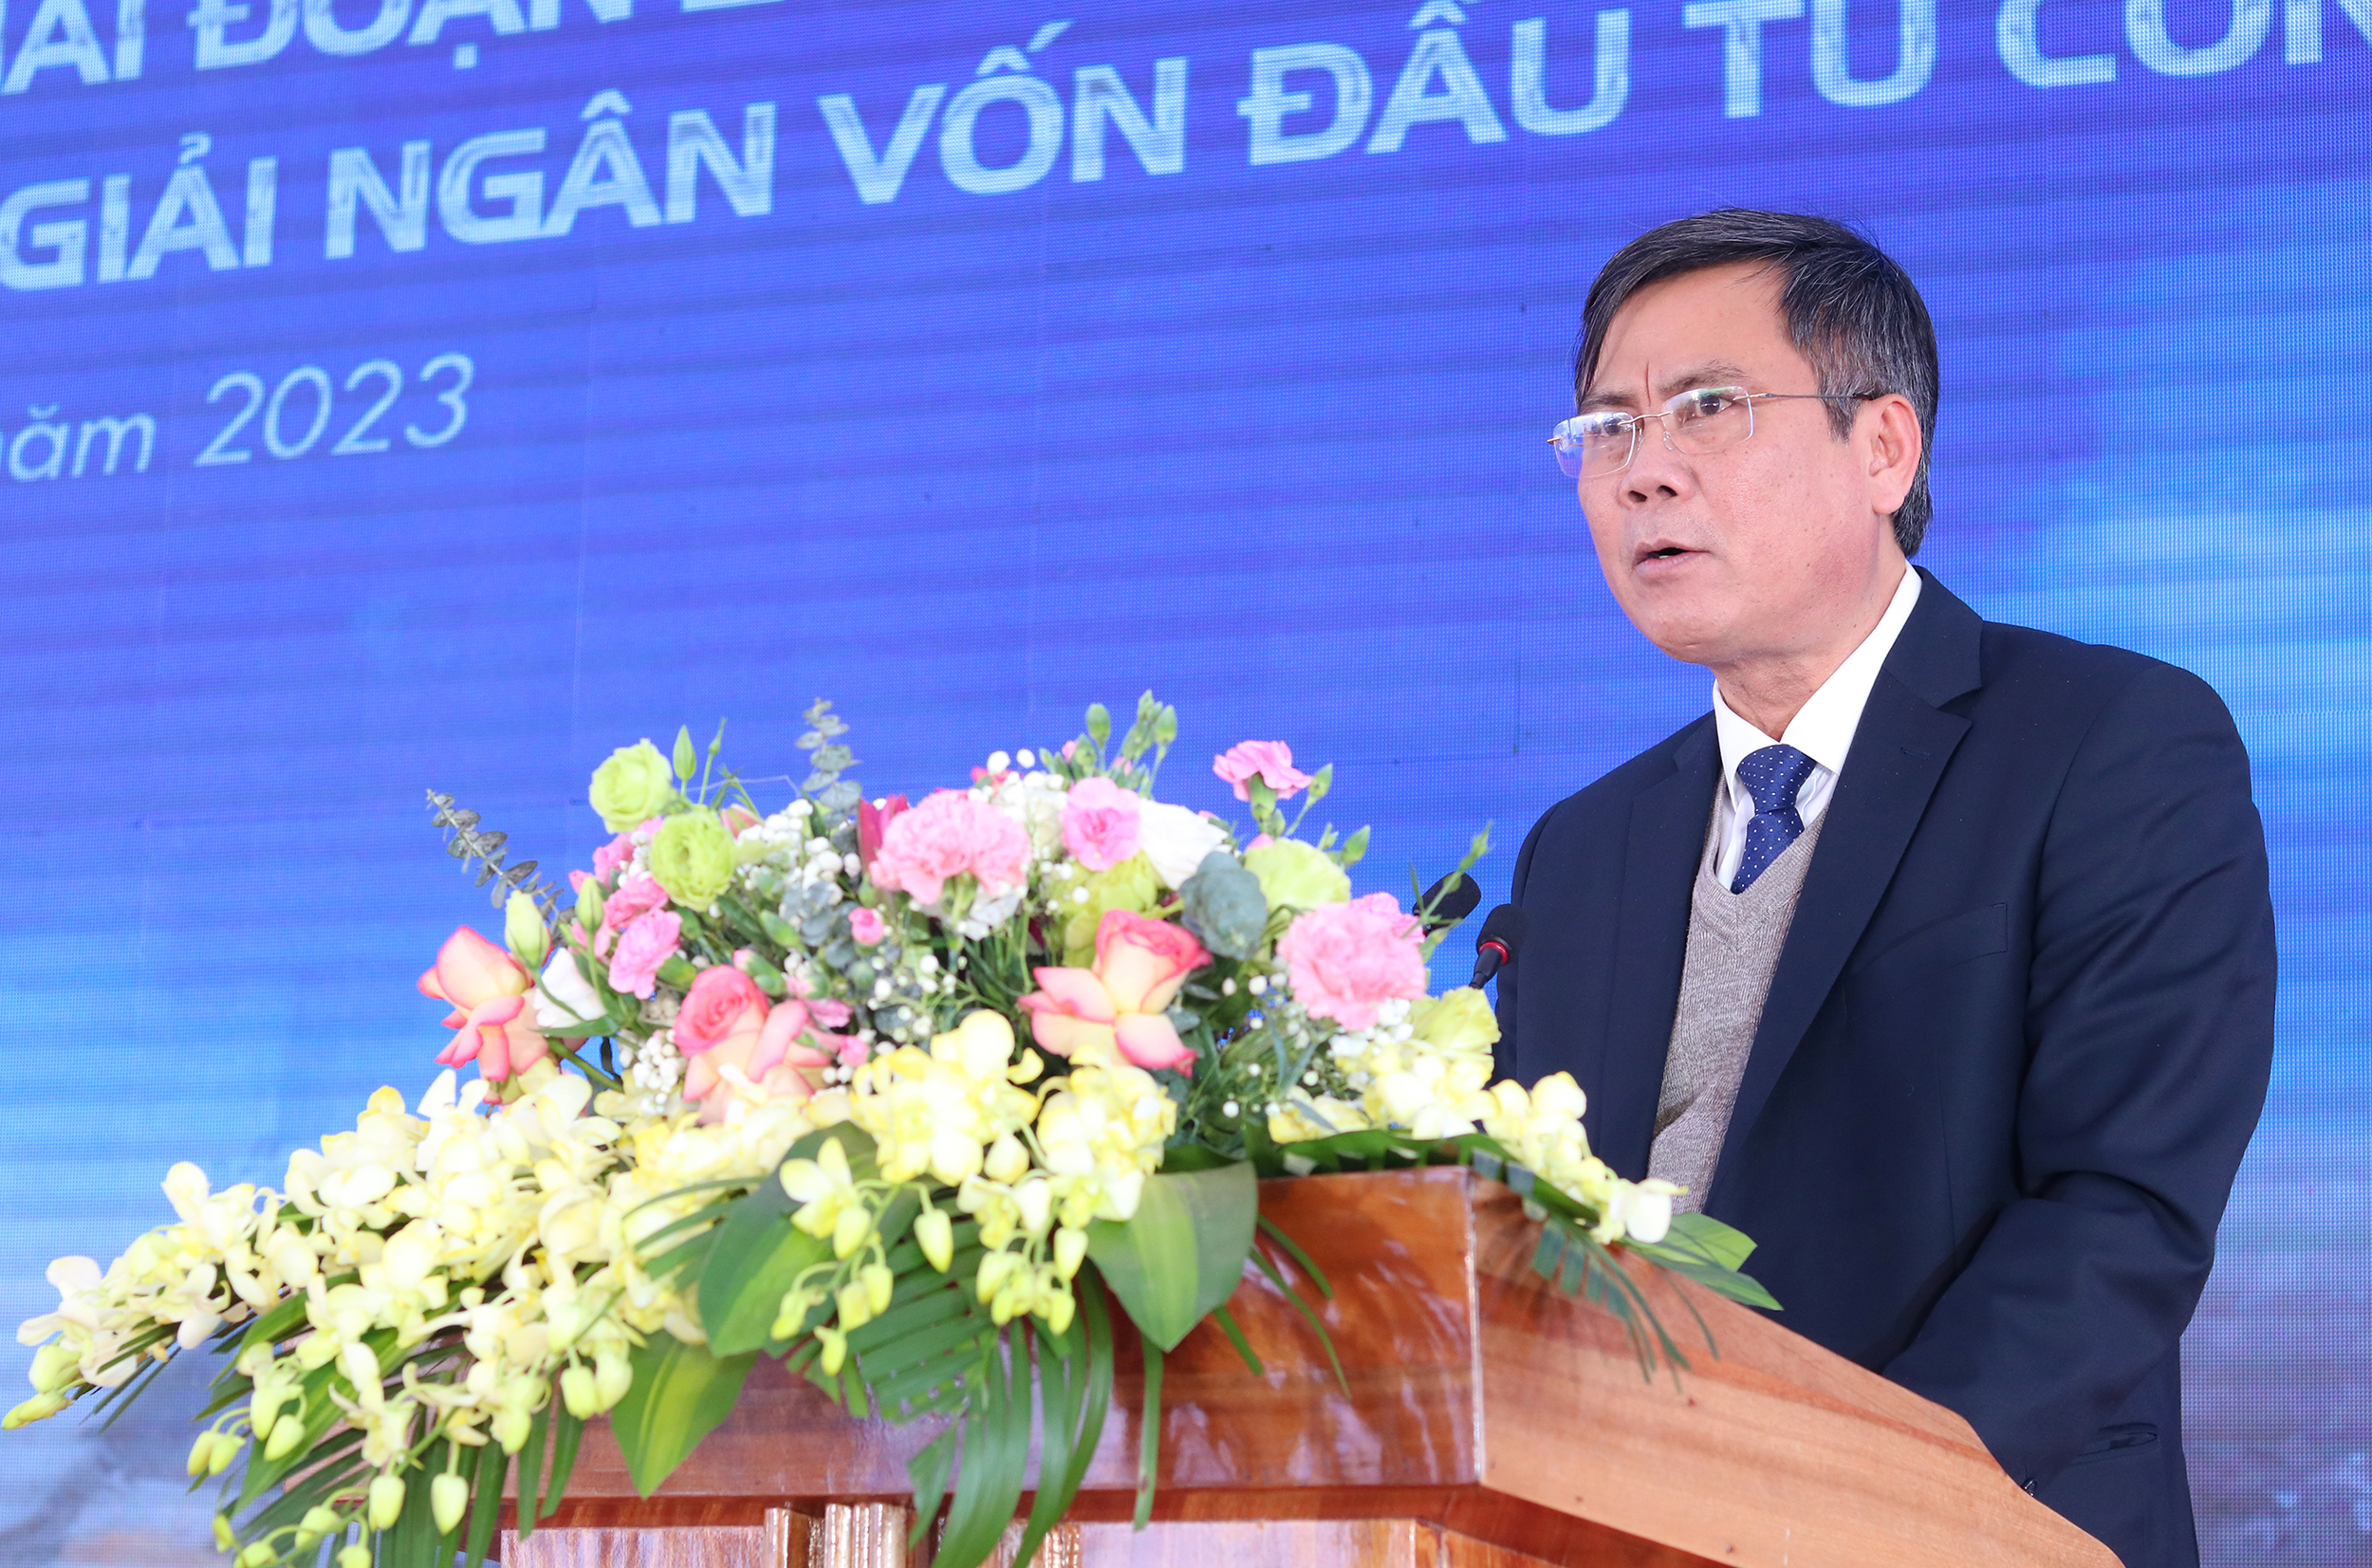 Chủ tịch tỉnh Quảng Bình Trần Thắng: Nhìn rõ hạn chế để phát triển bền vững